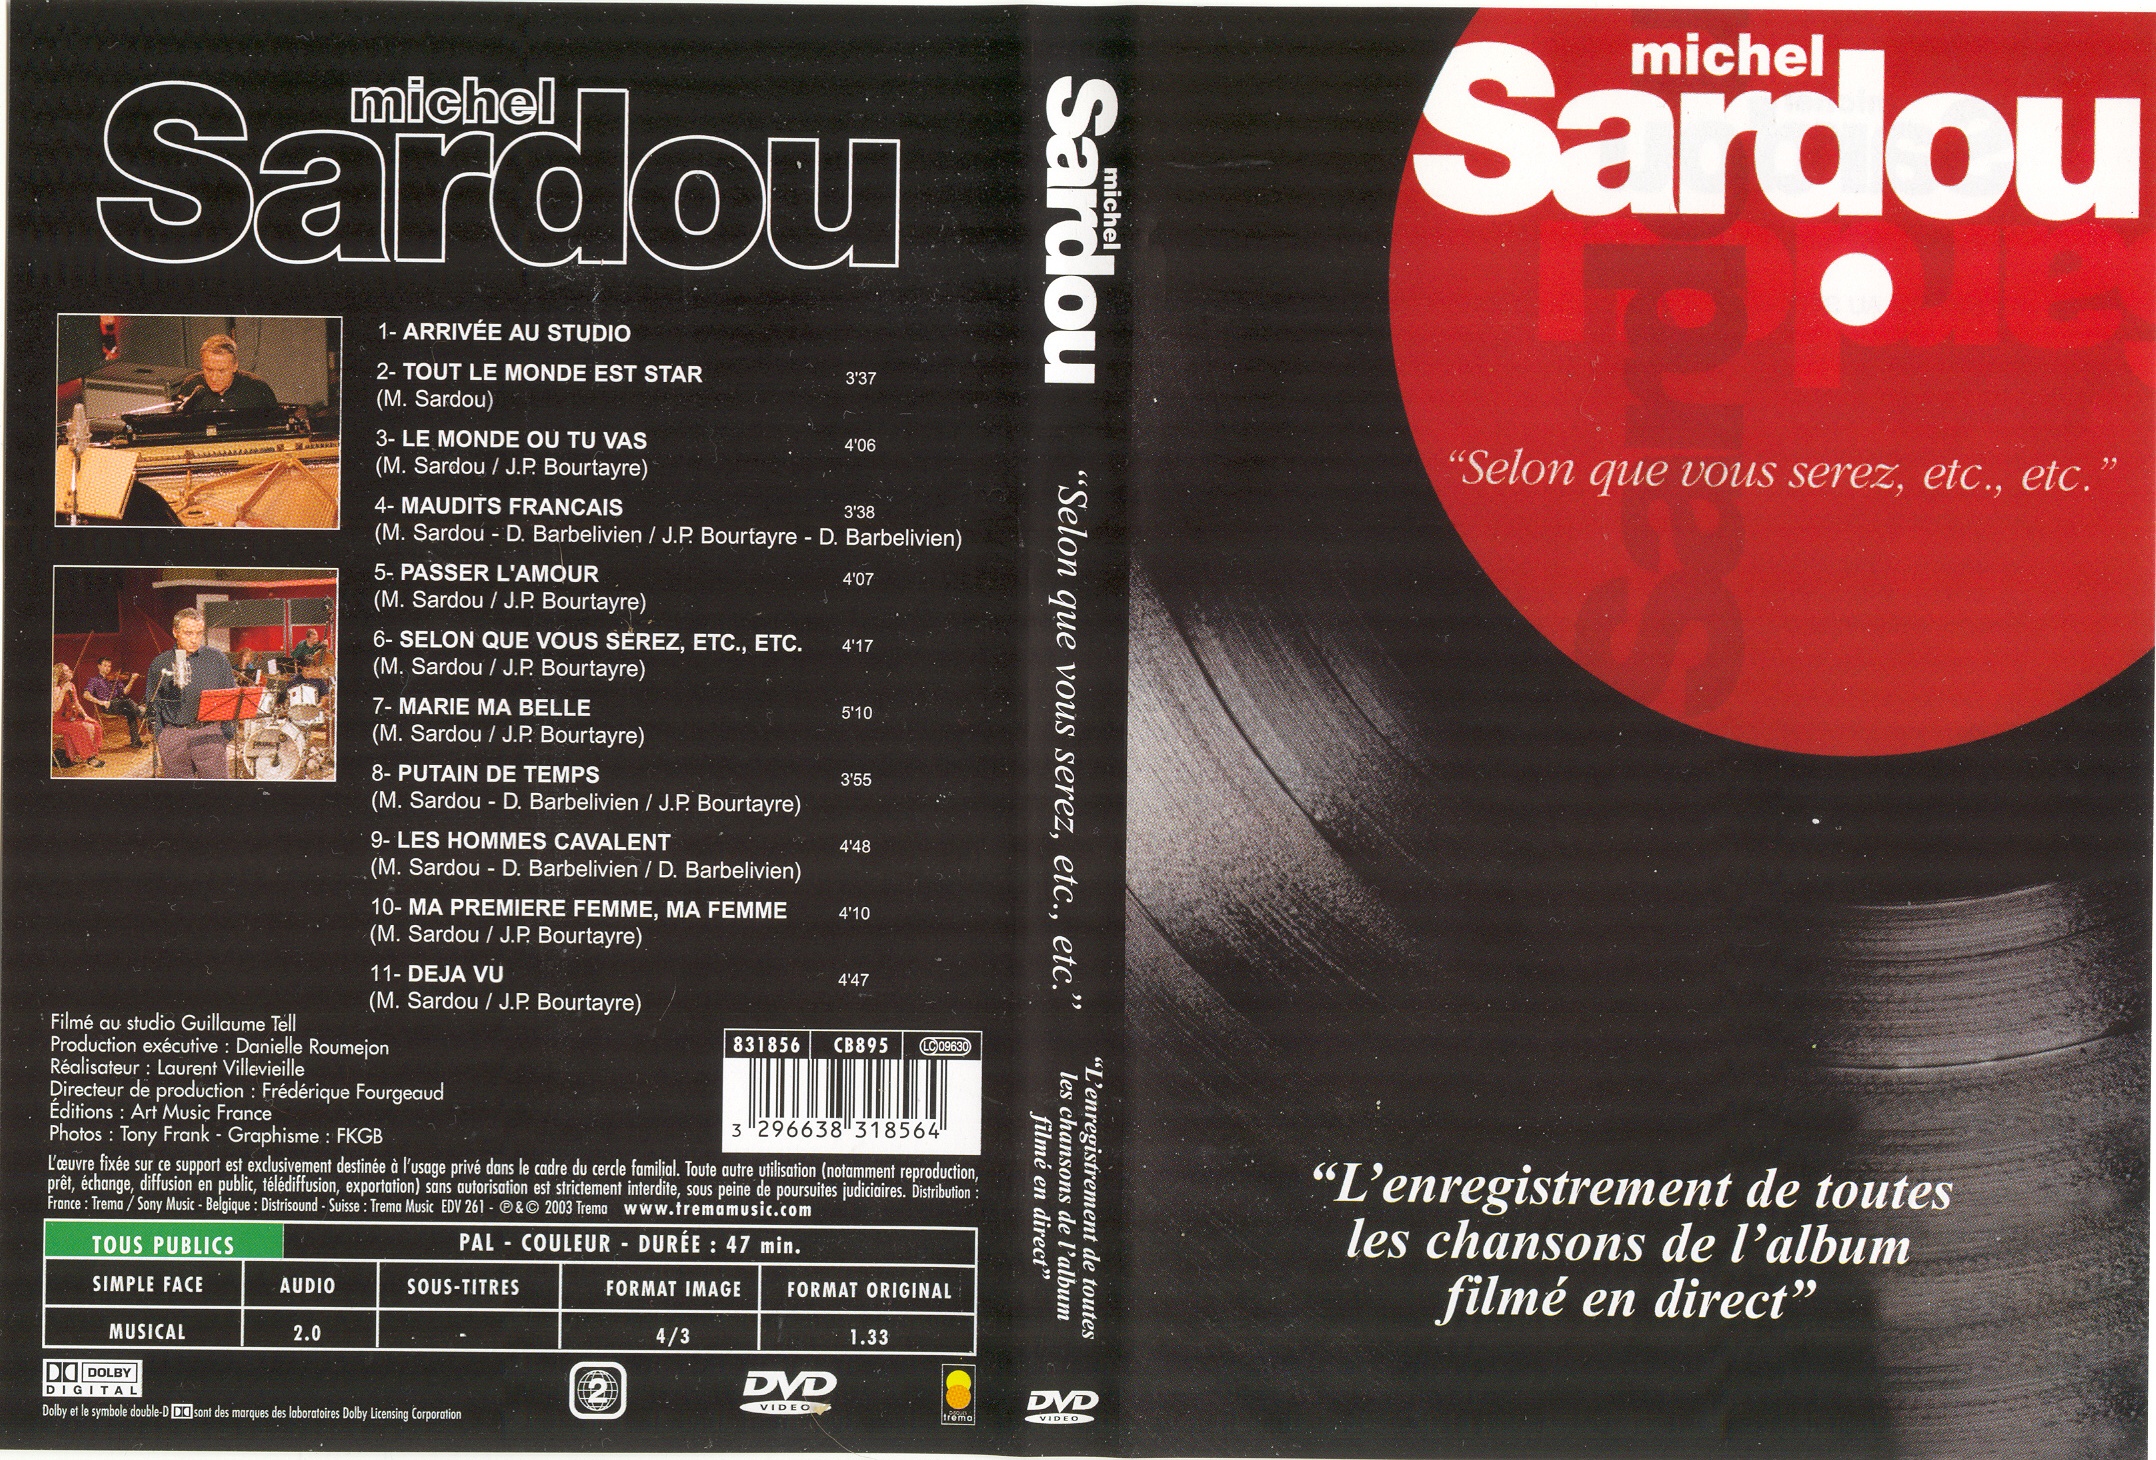 Jaquette DVD Michel Sardou selon ce que vous serez